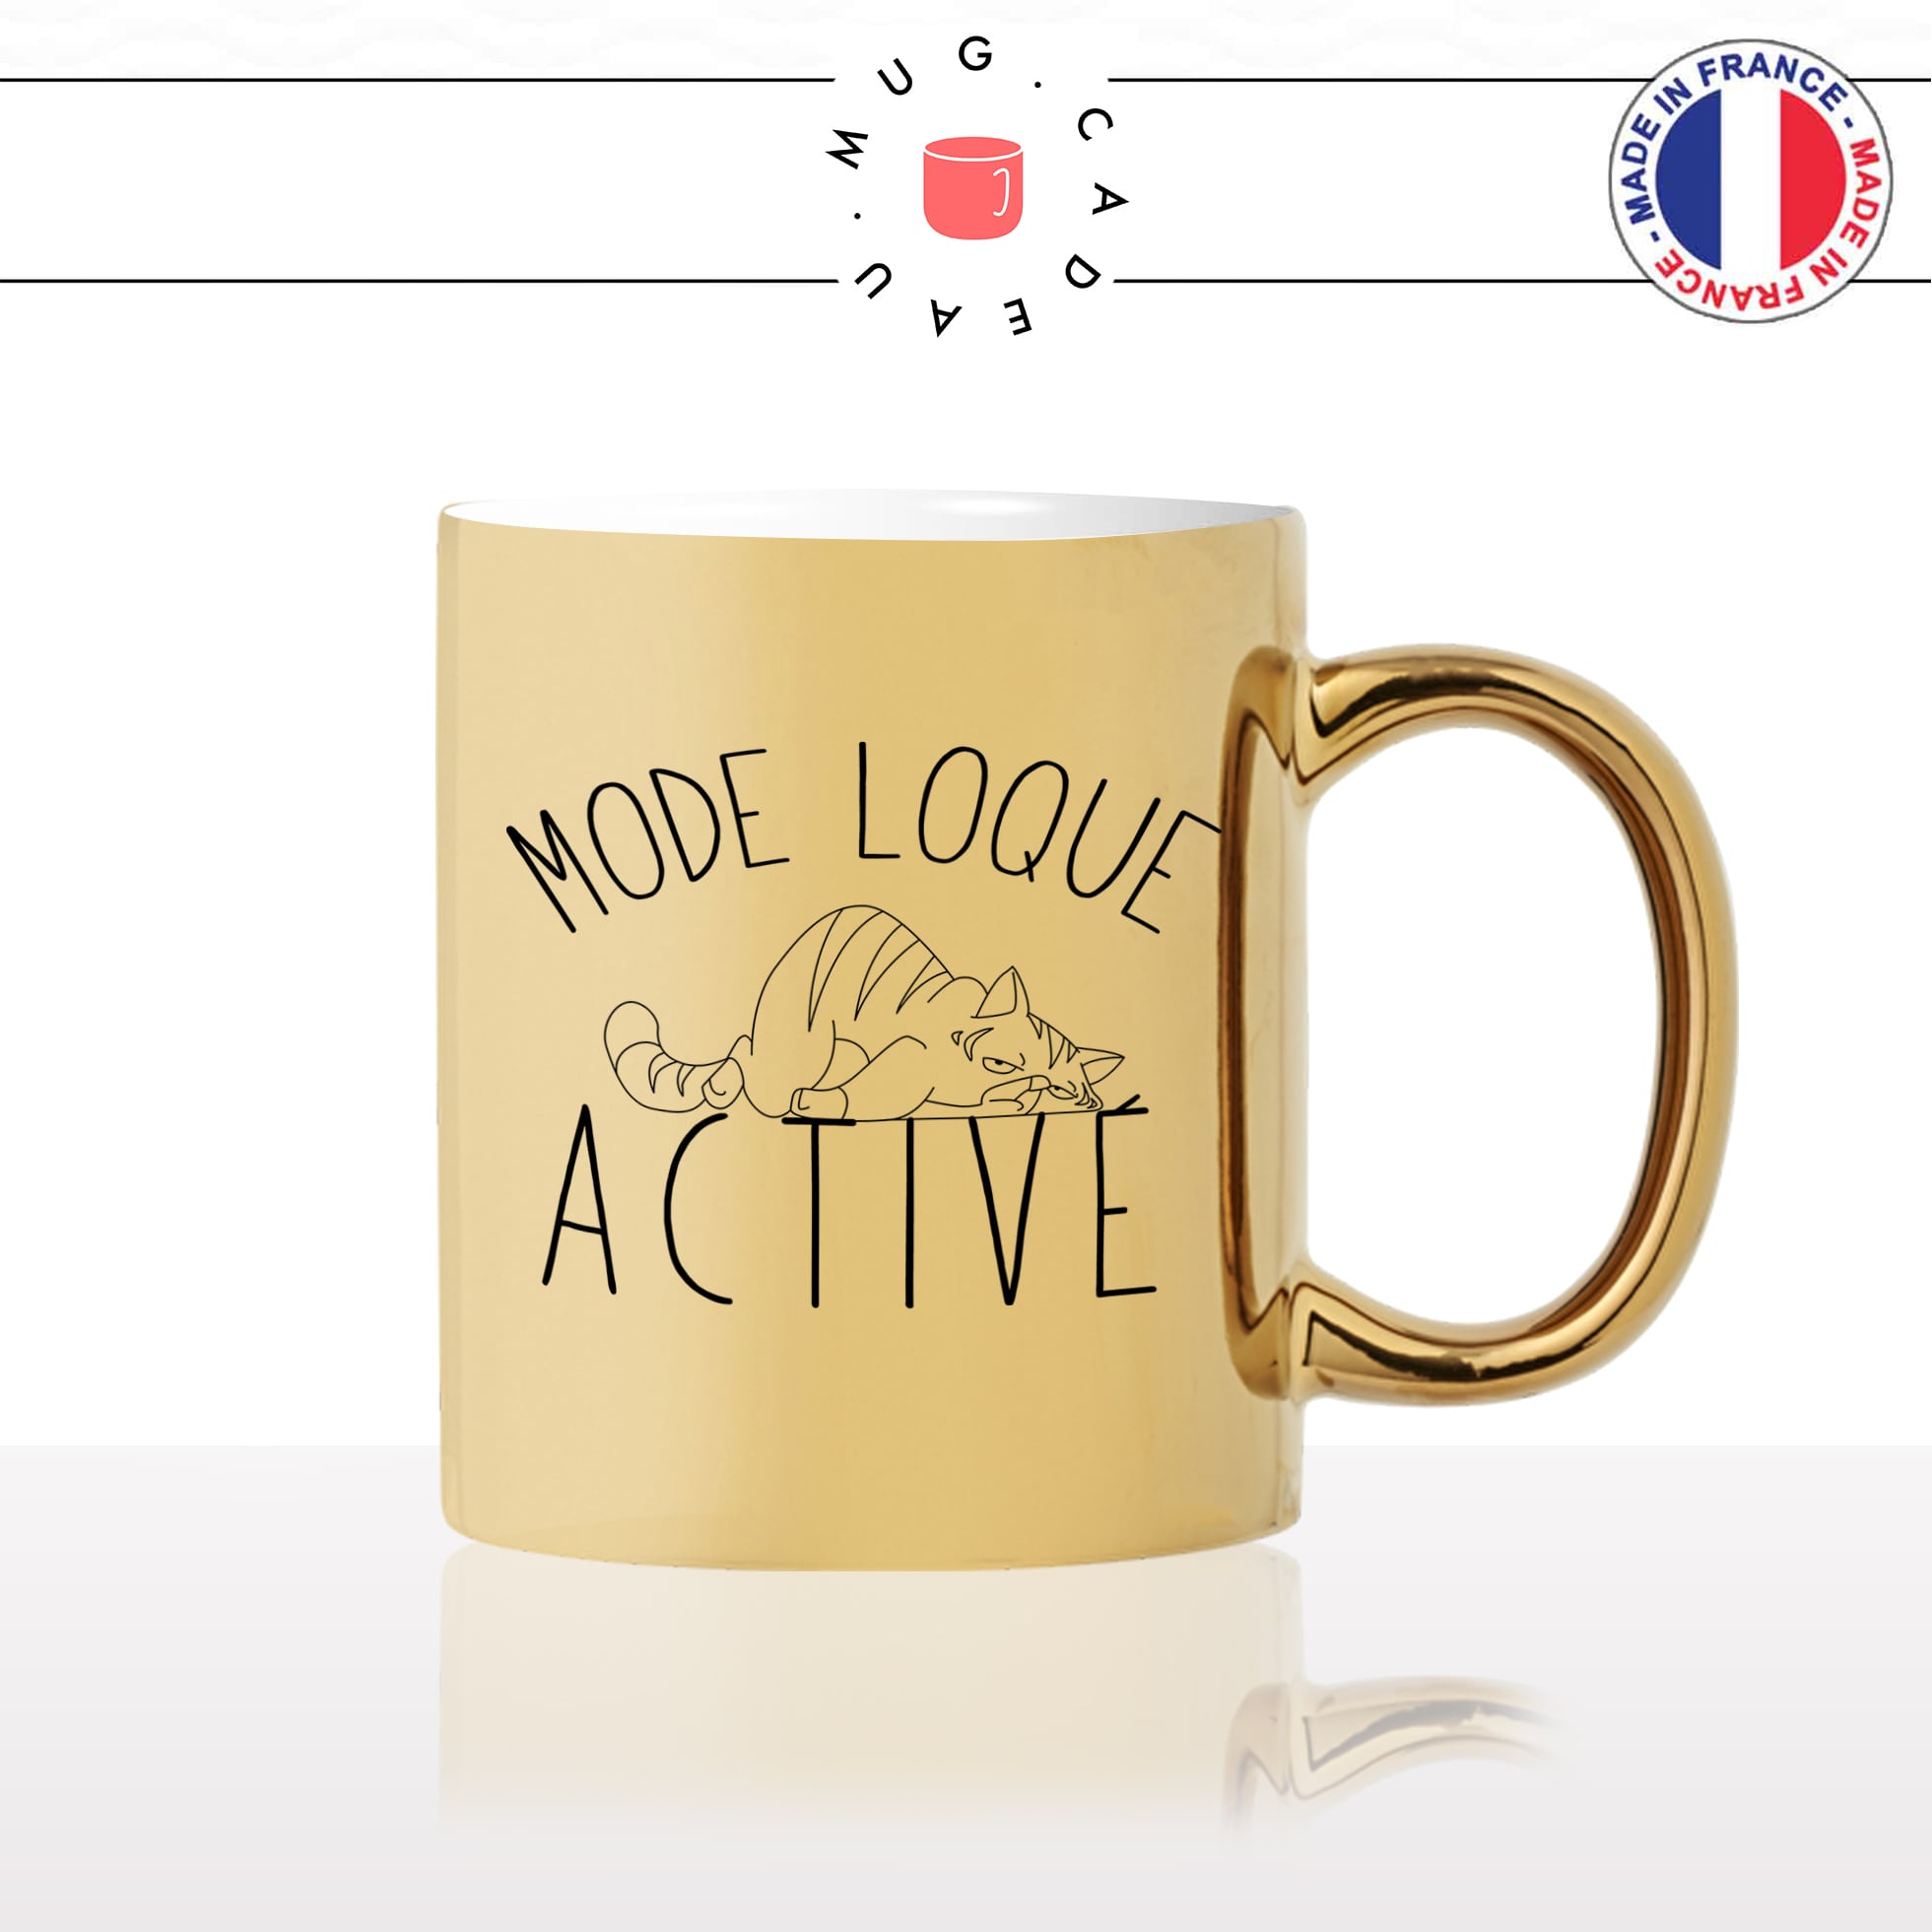 mug-tasse-or-doré-mode-loque-activé-flemme-WE-humour-chat-mignon-animal-chaton-noir-fun-café-thé-idée-cadeau-original-personnalisé-gold2-min